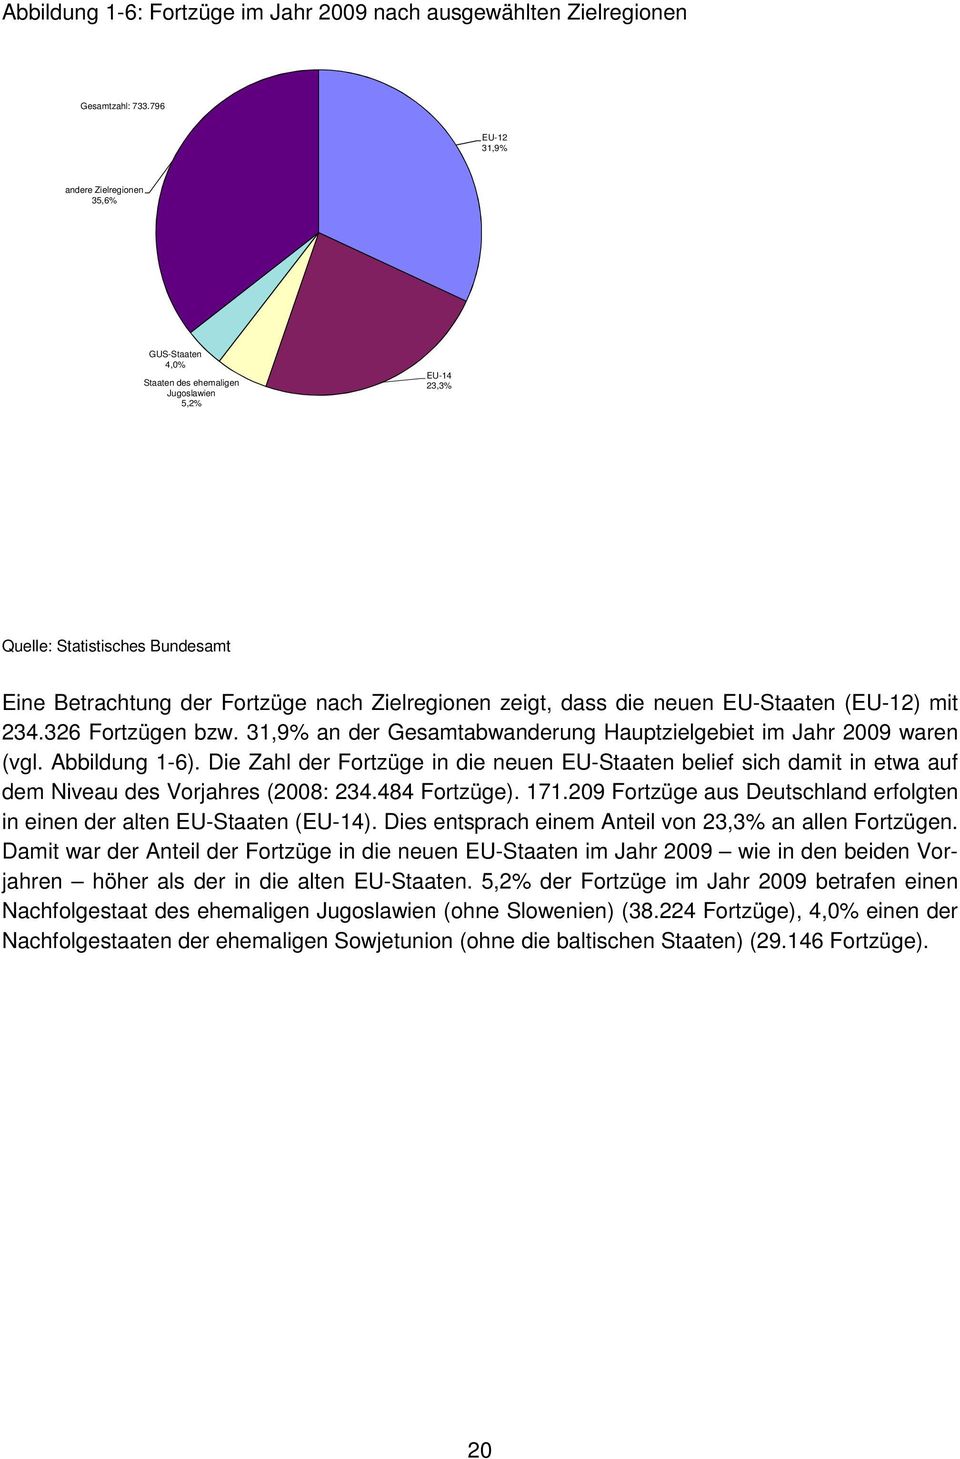 dass die neuen EU-Staaten (EU-12) mit 234.326 Fortzügen bzw. 31,9% an der Gesamtabwanderung Hauptzielgebiet im Jahr 2009 waren (vgl. Abbildung 1-6).